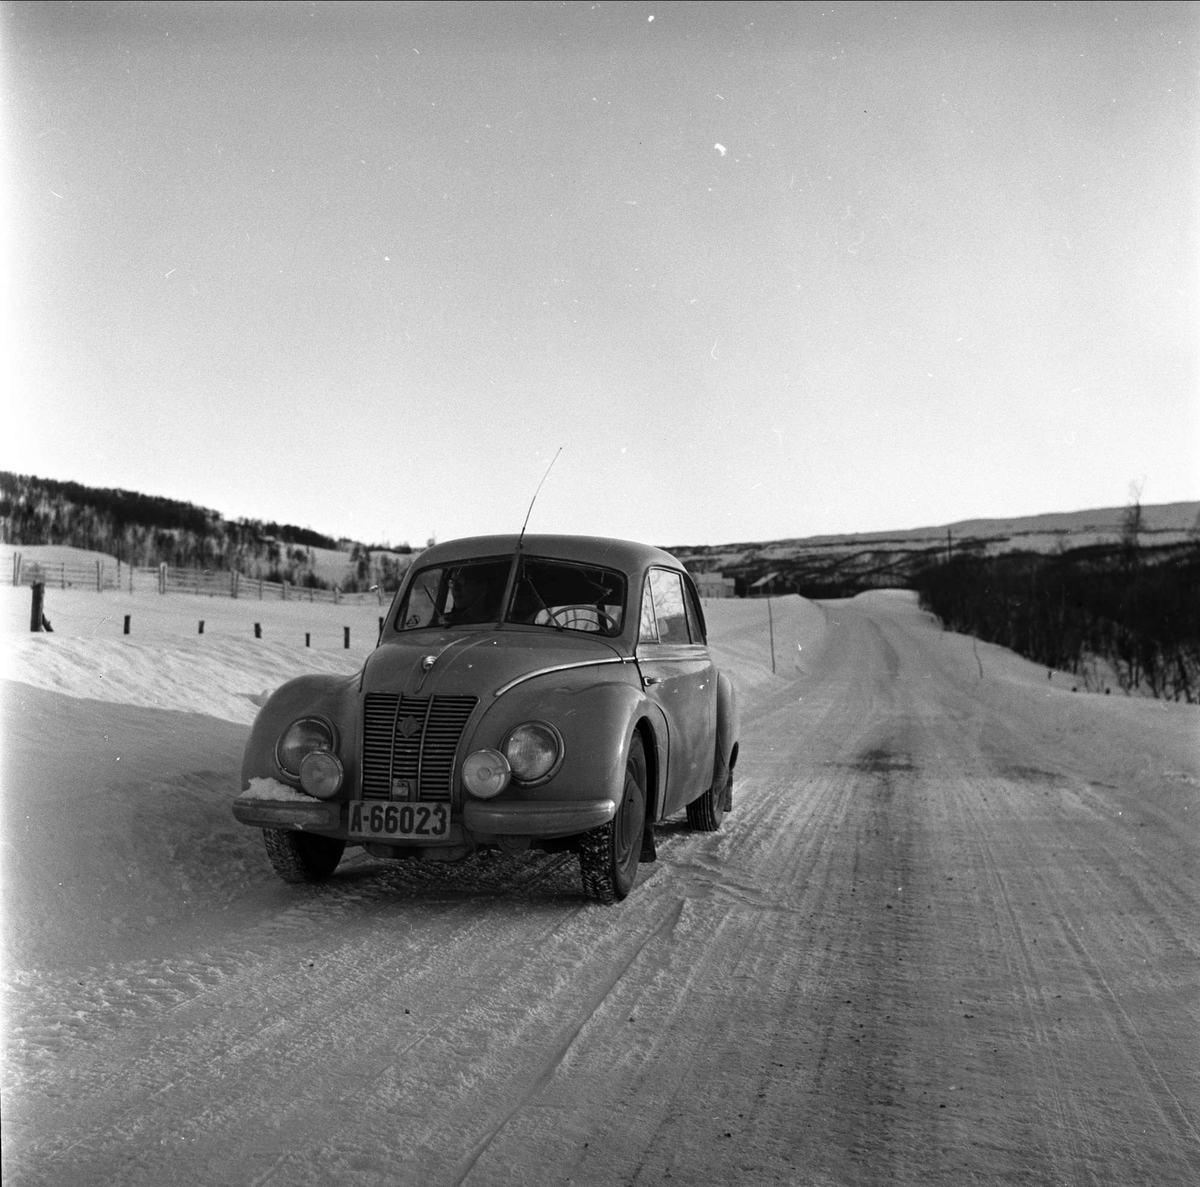 Røros, Sør-Trøndelag, mars 1959. Bil på vei.